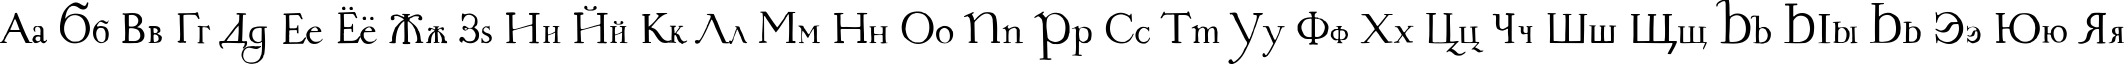 Пример написания русского алфавита шрифтом 1709 TYGRA